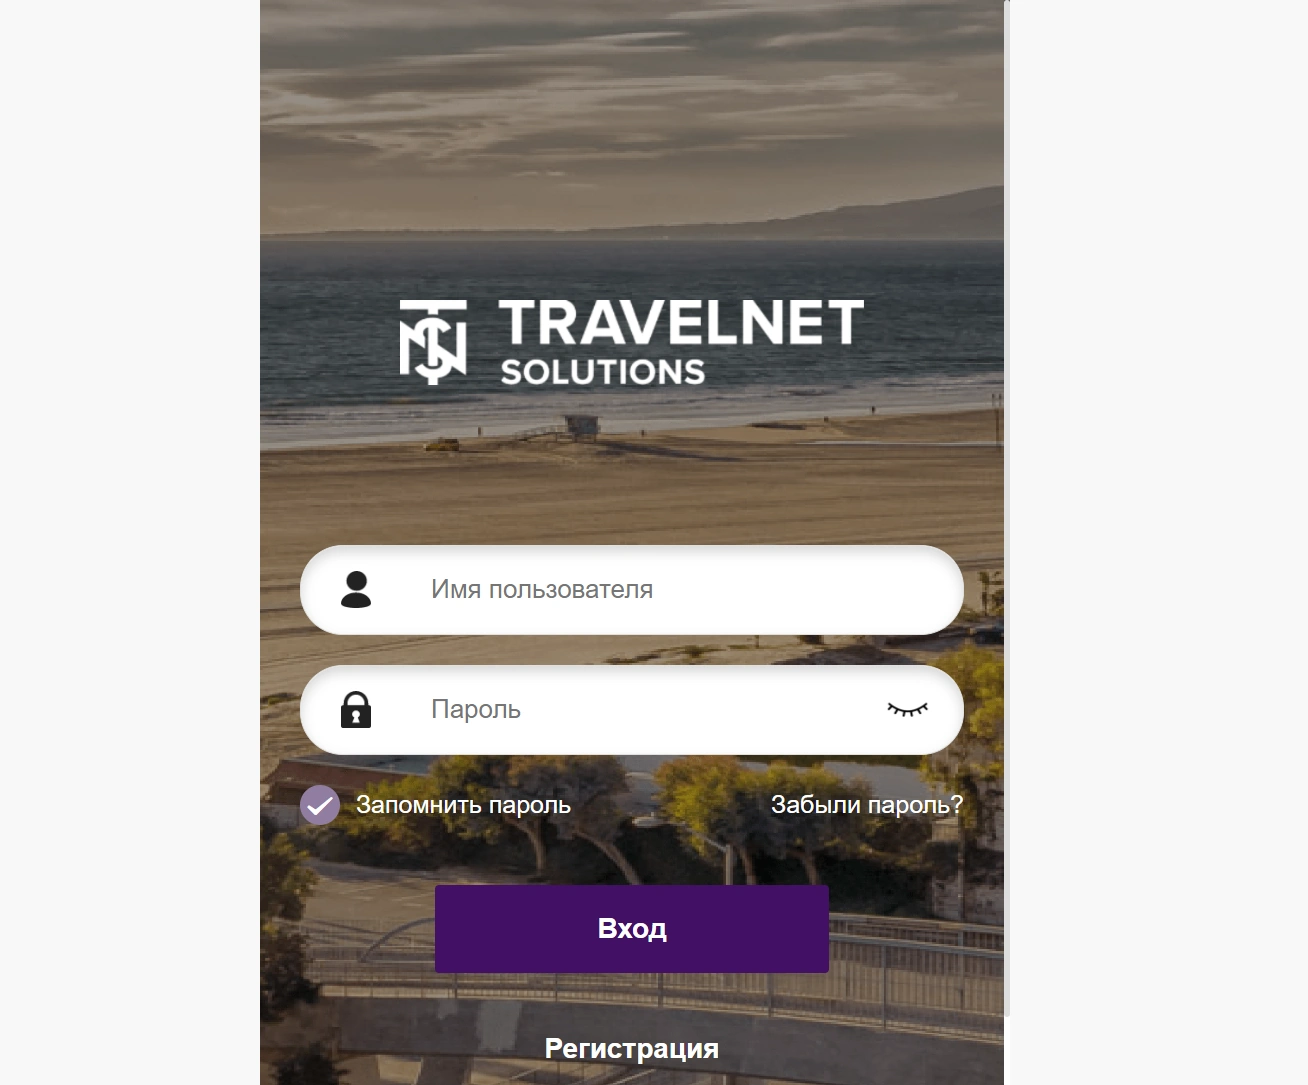 TravelNet Solutions - работа в компании tnsinc-agency.com. Отзывы и обзор